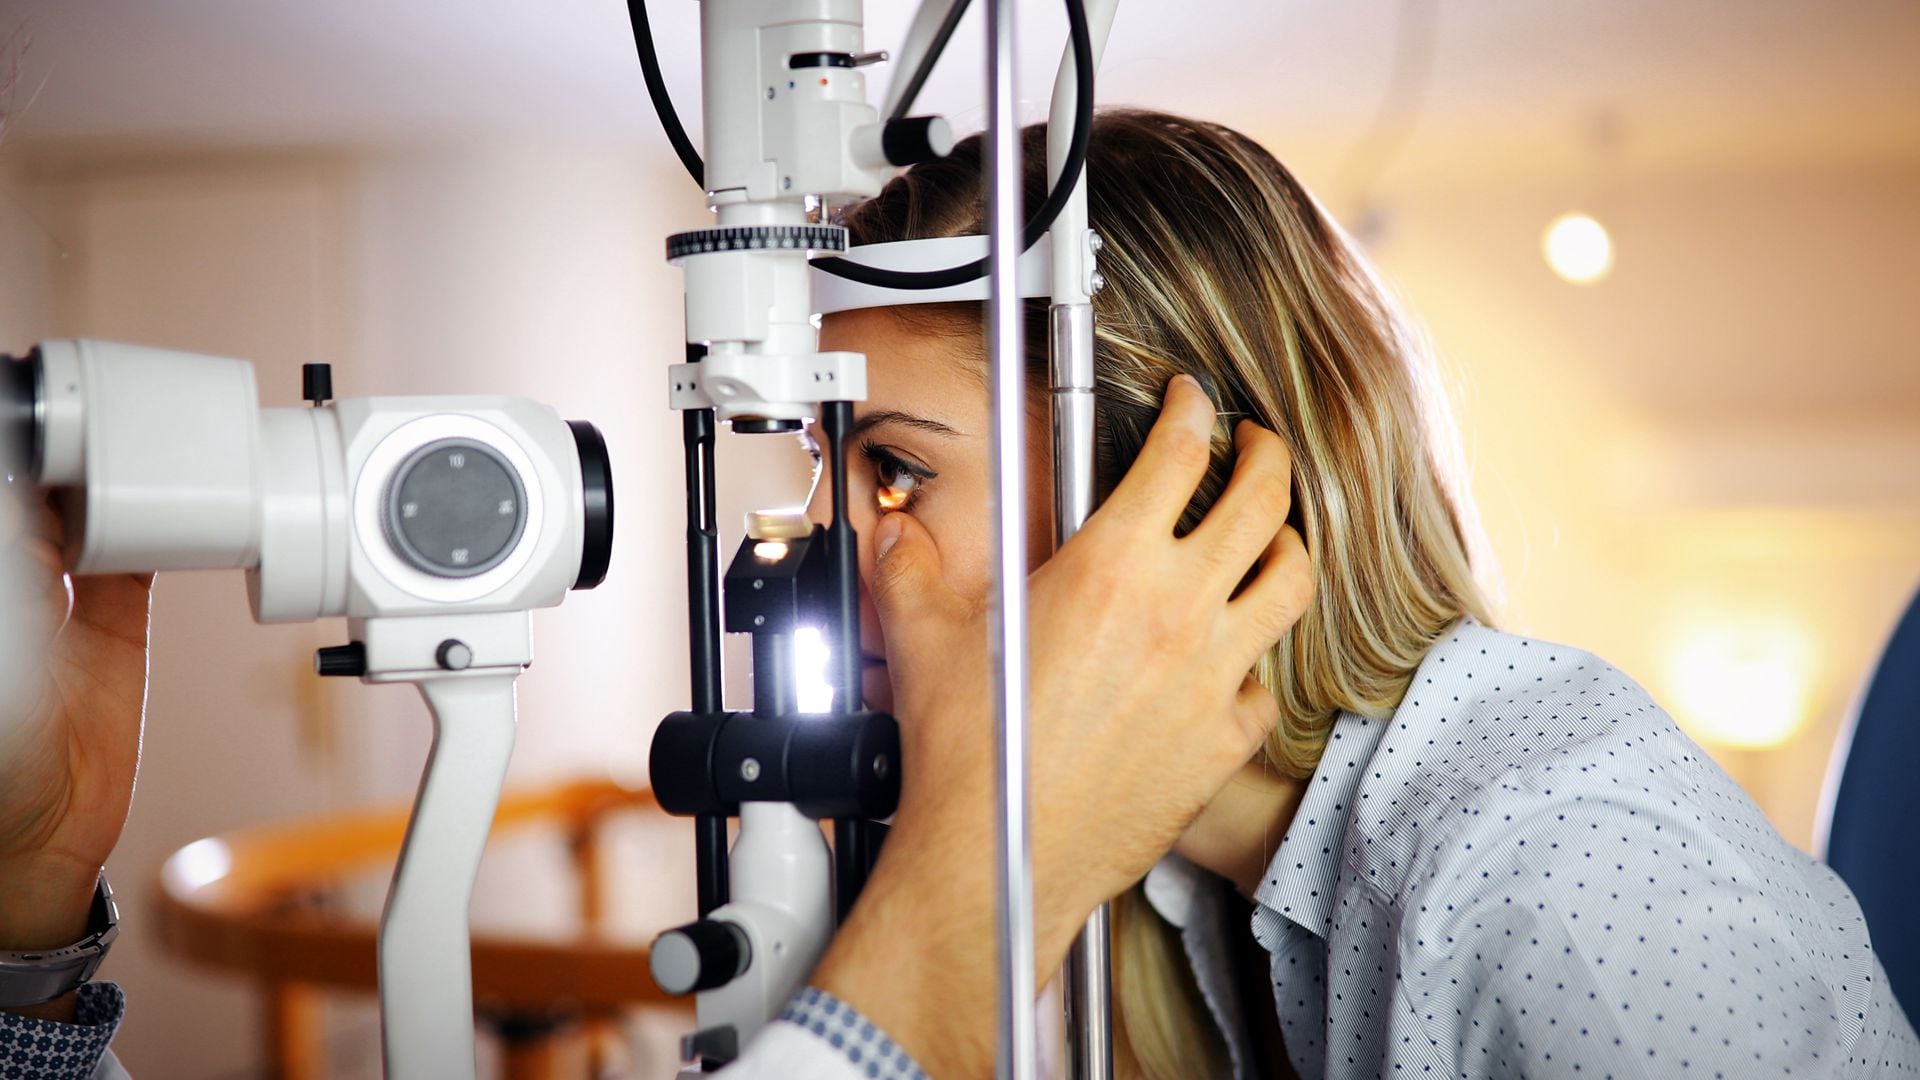 Los más vulnerables al glaucoma son los mayores de 40, personas con familiares directos afectados, diabéticos, miopes, hipermétropes, y quienes hayan sufrido traumas oculares o hayan usado corticoides (Getty)